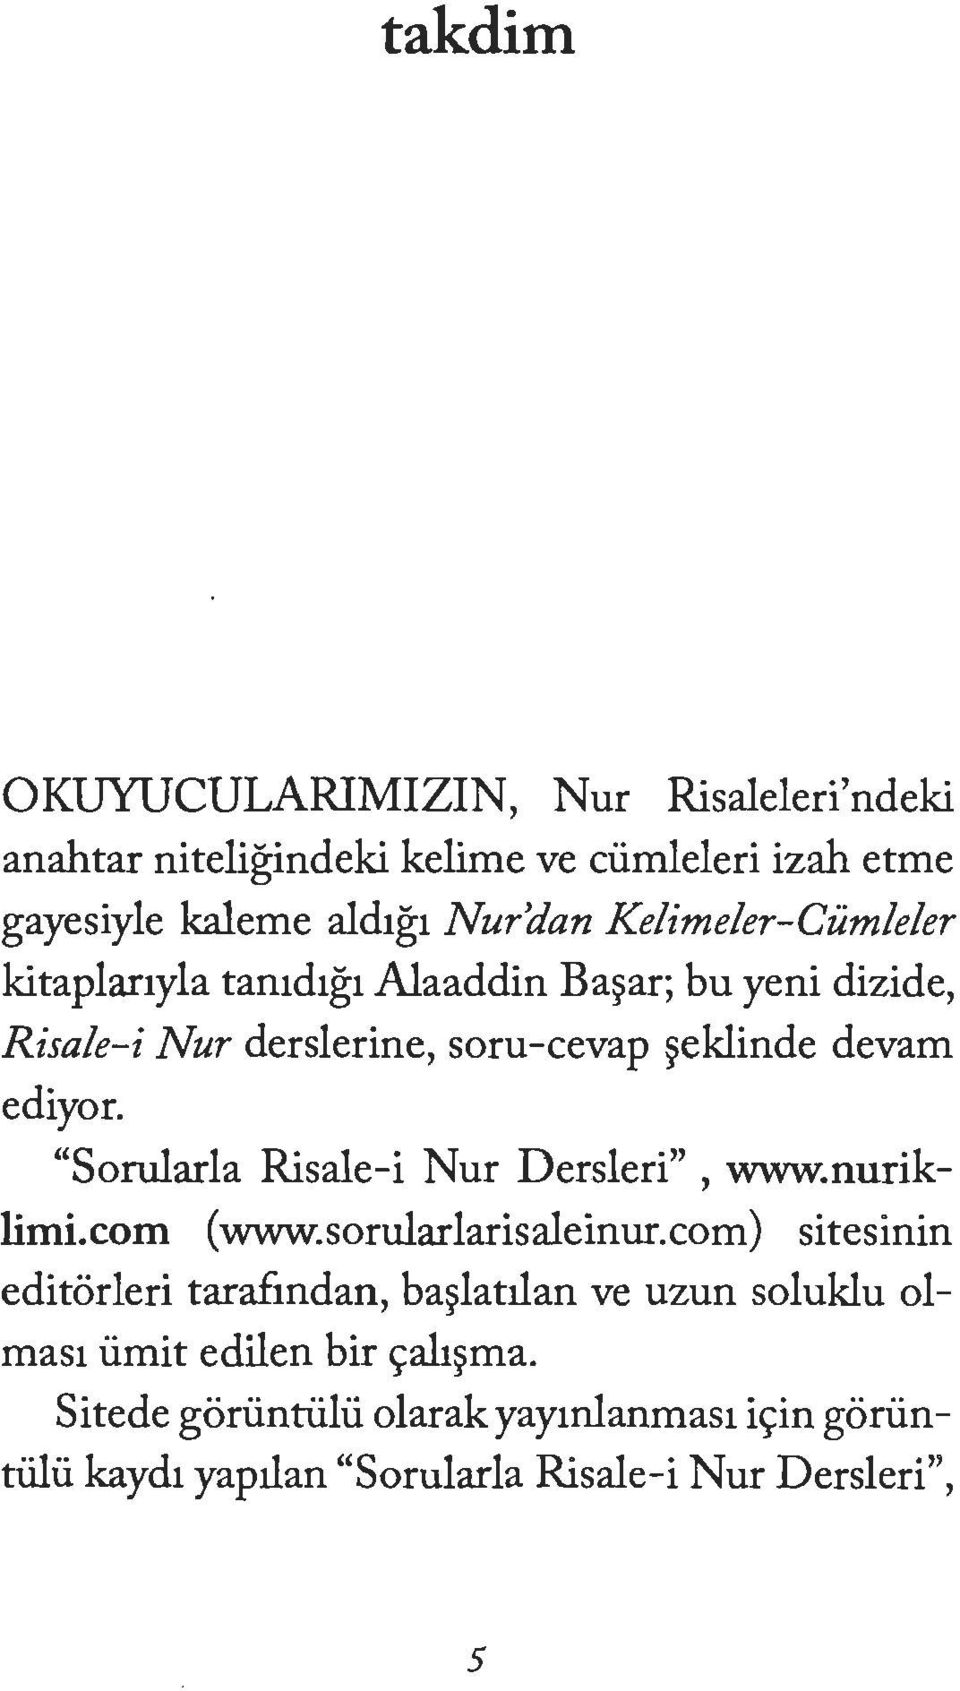 "Sorularla Risale-i Nur Dersleri", www.nuriklimi.com (www.sorularlarisaleinur.